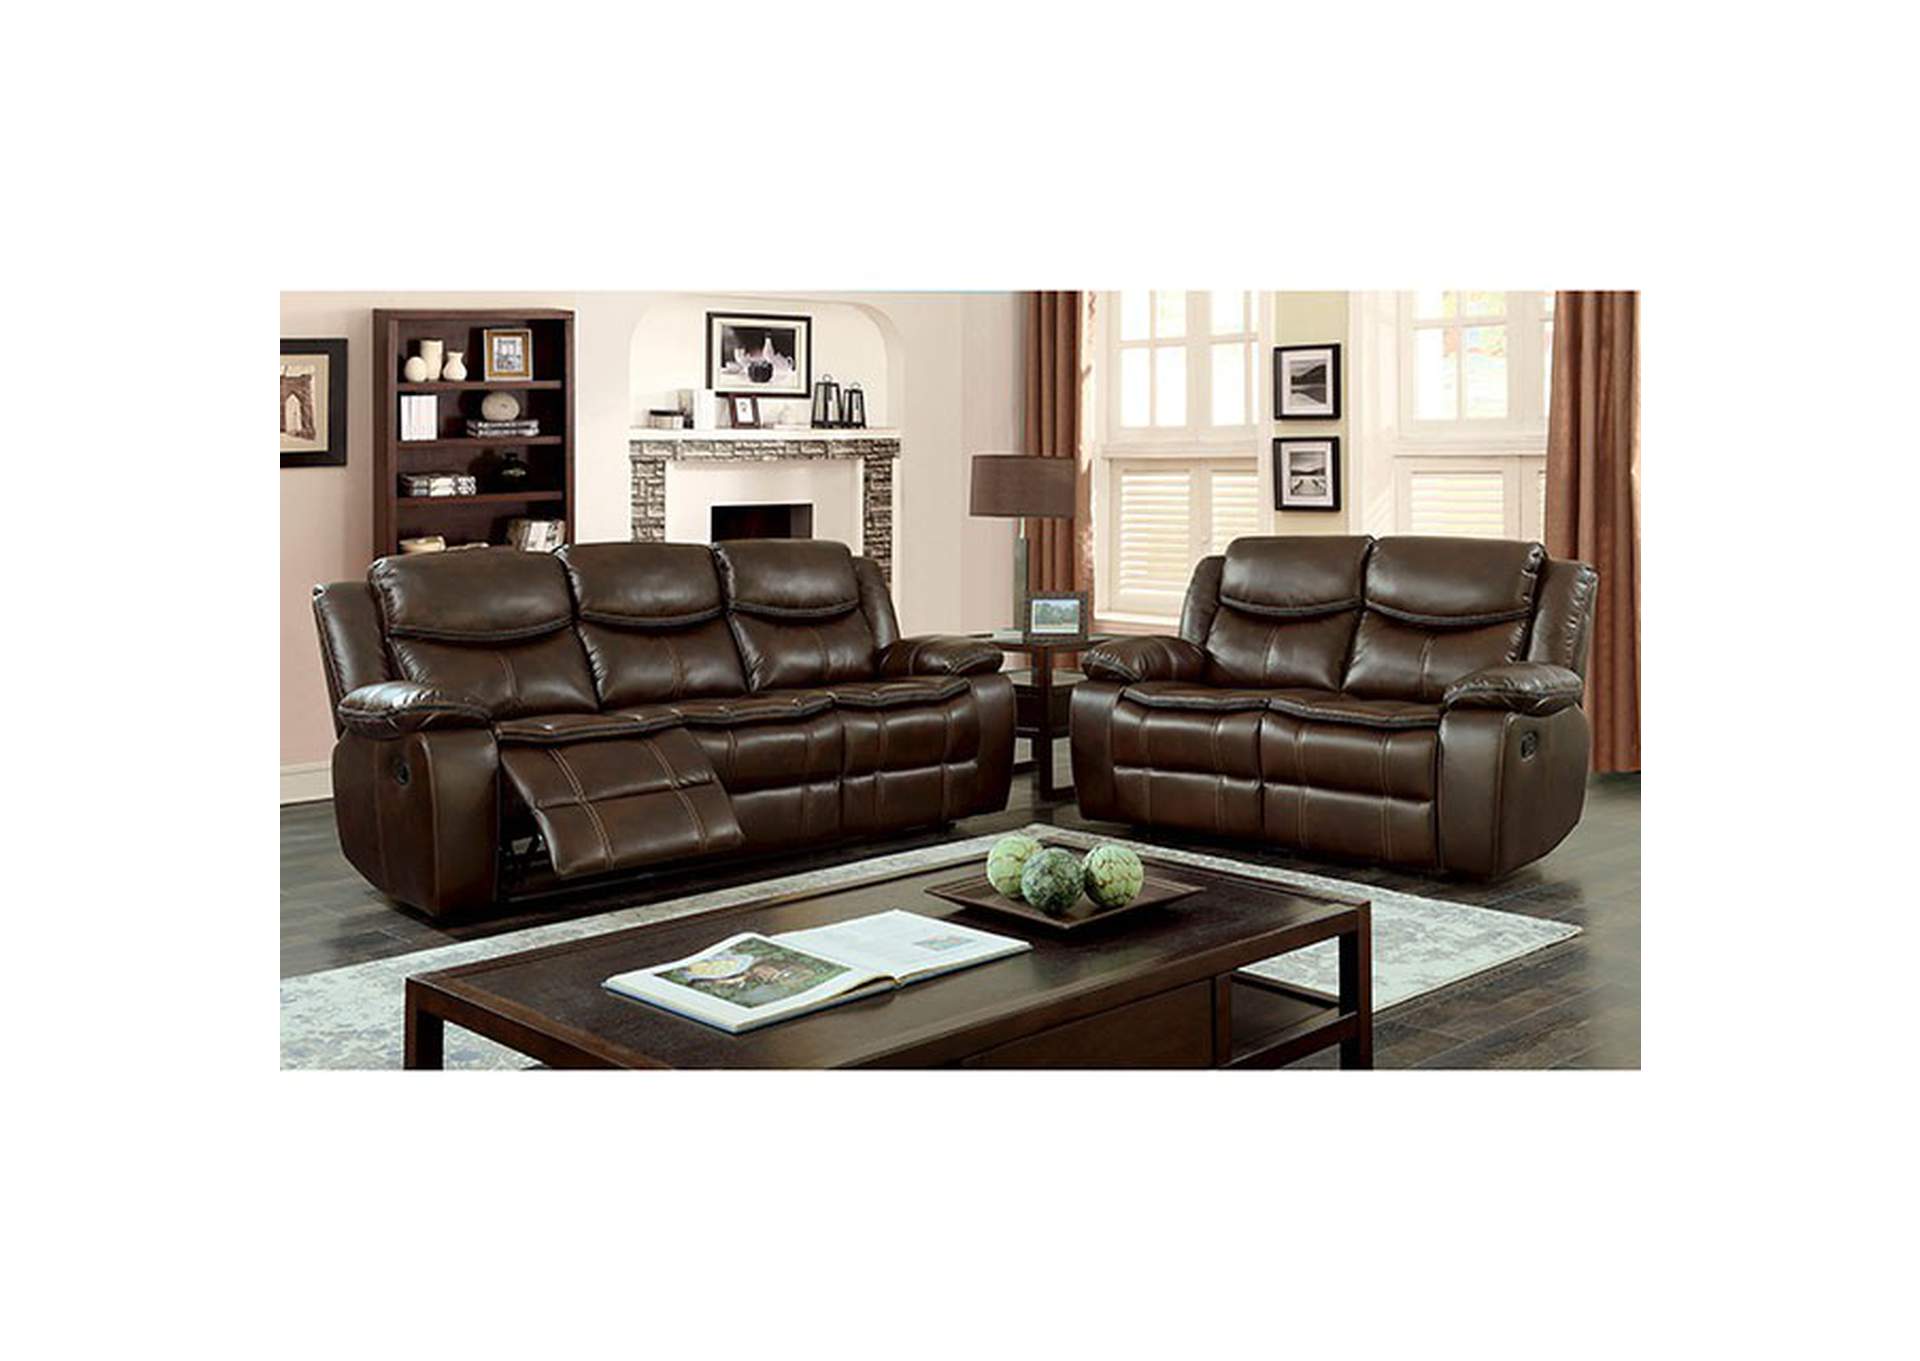 Pollux Sofa,Furniture of America